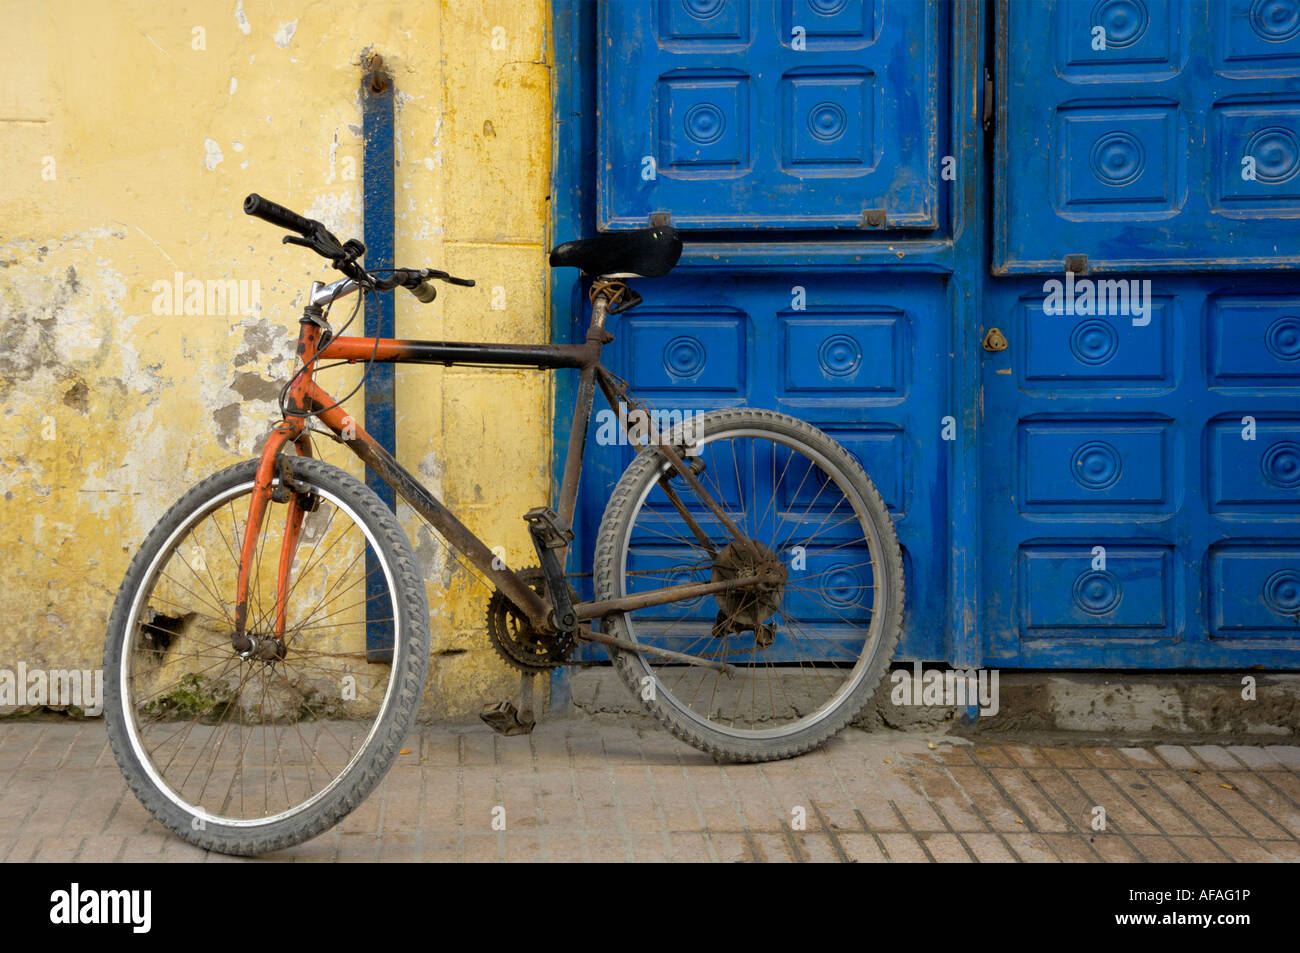 Vieux vélo en stationnement rue Essaouira Maroc Afrique du Nord Banque D'Images